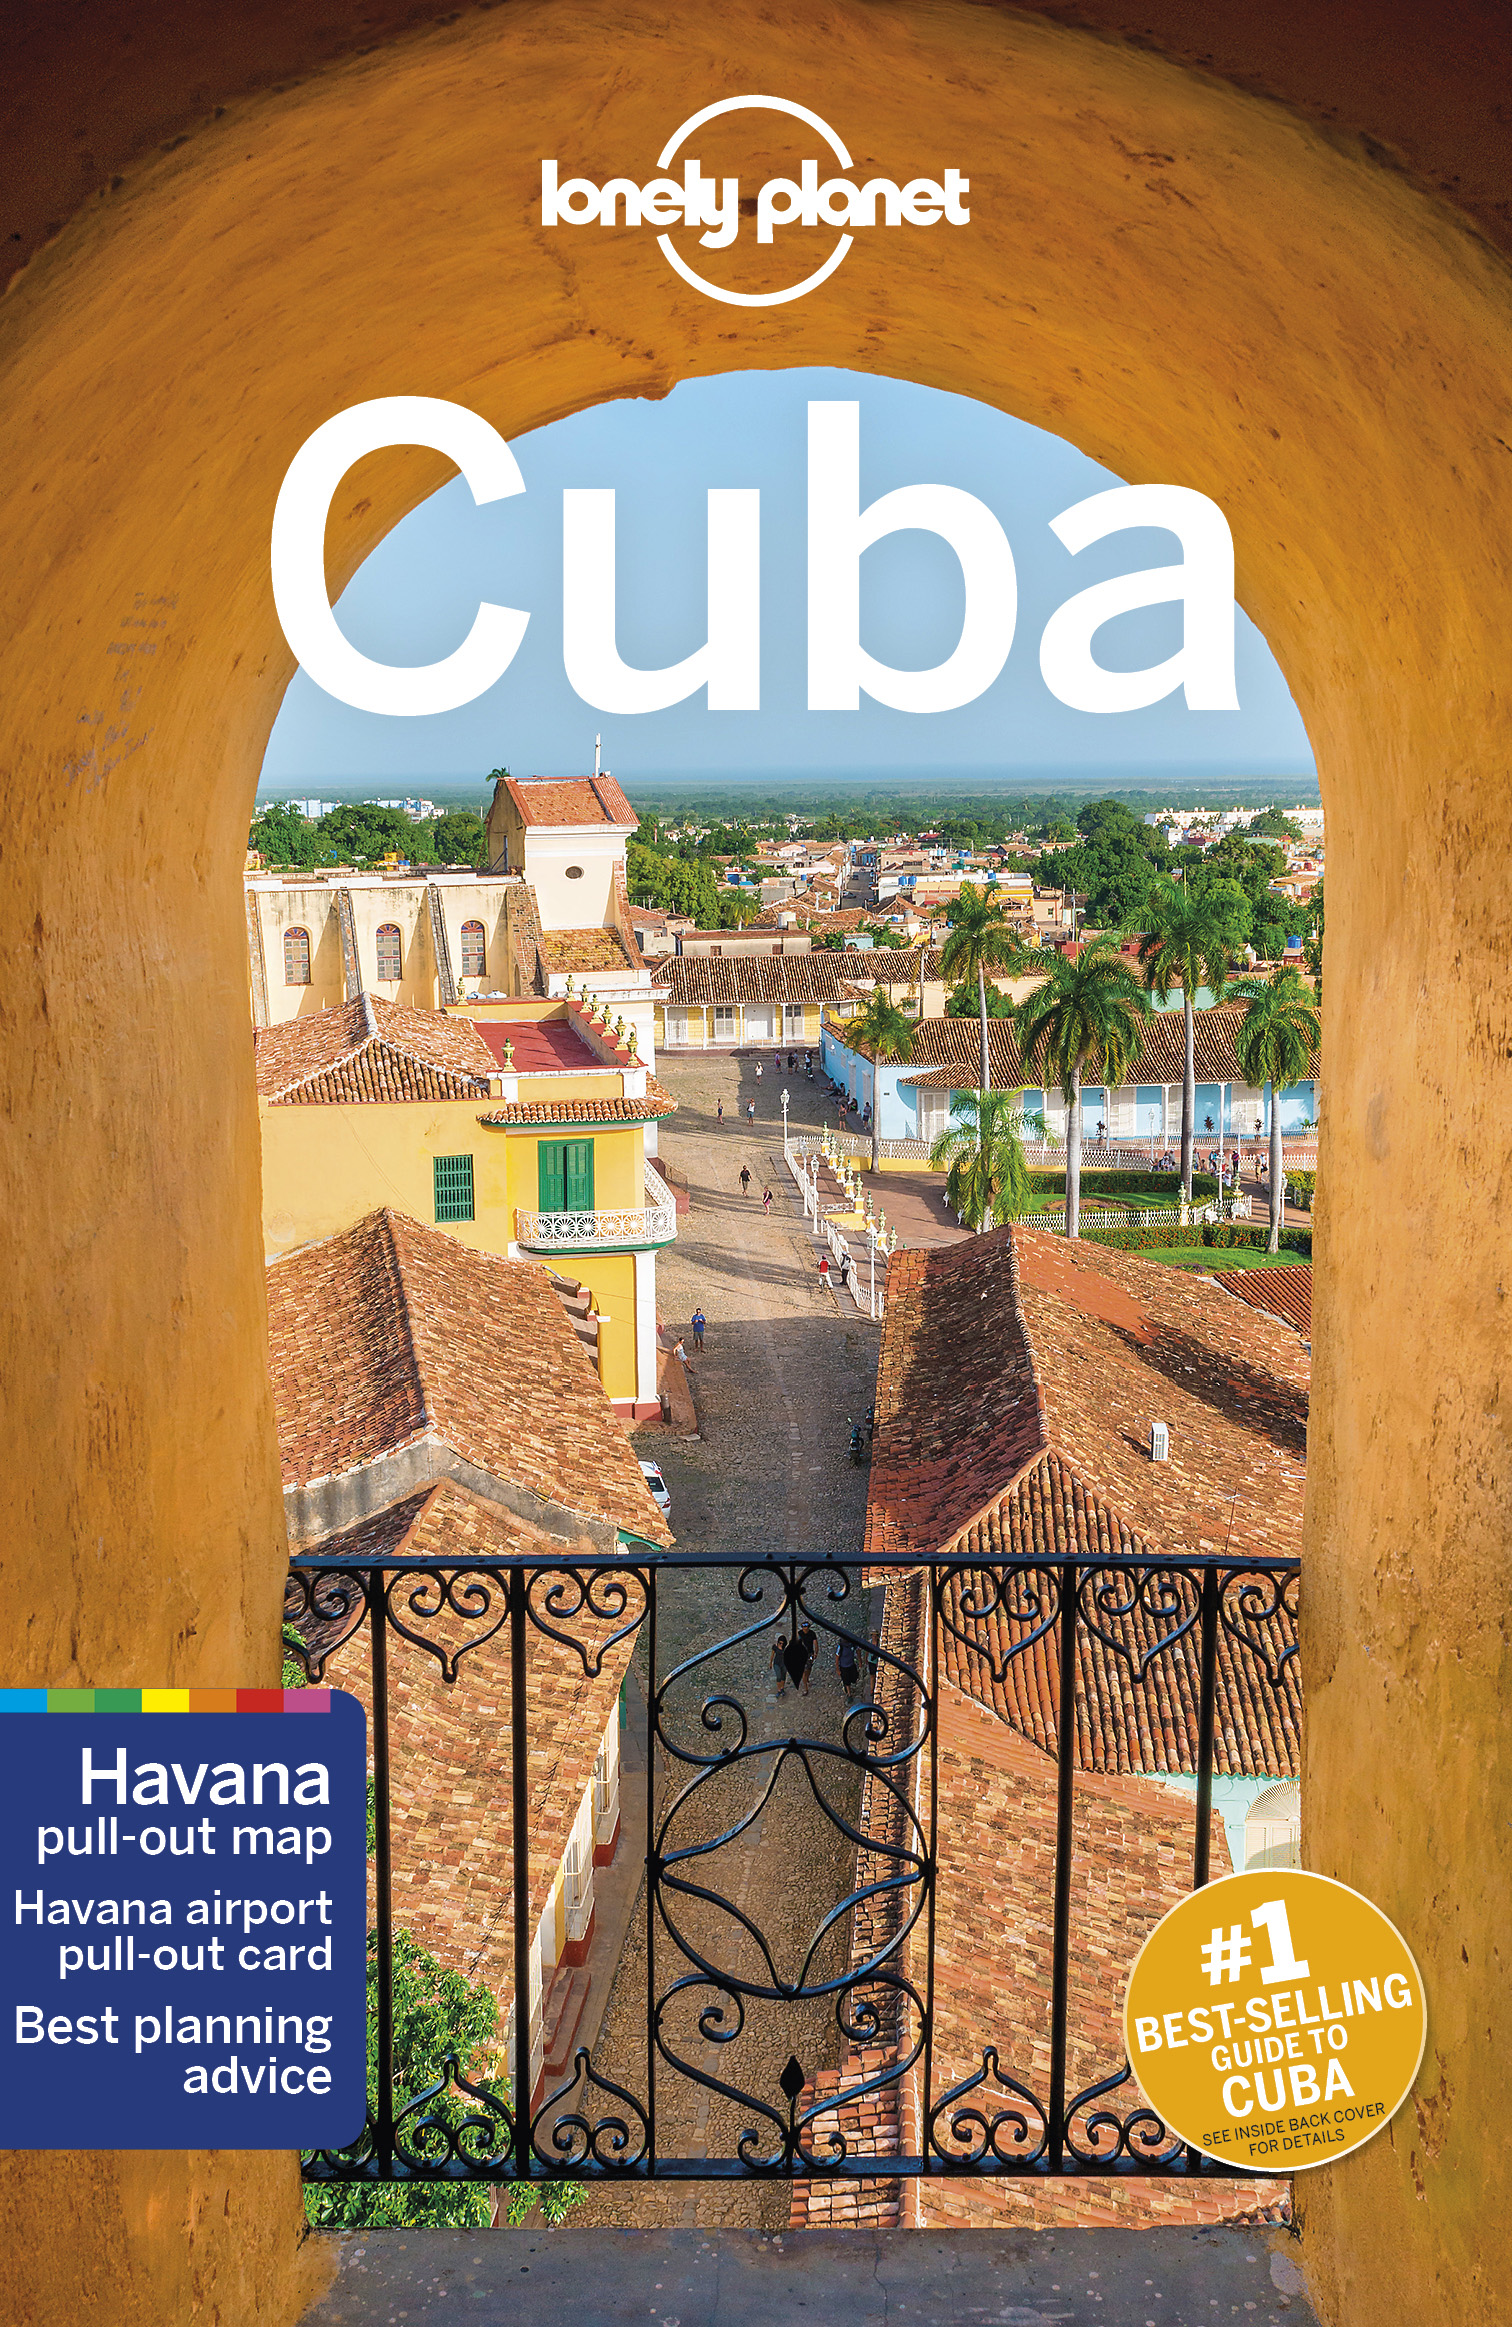 Cuba - turistický průvodce